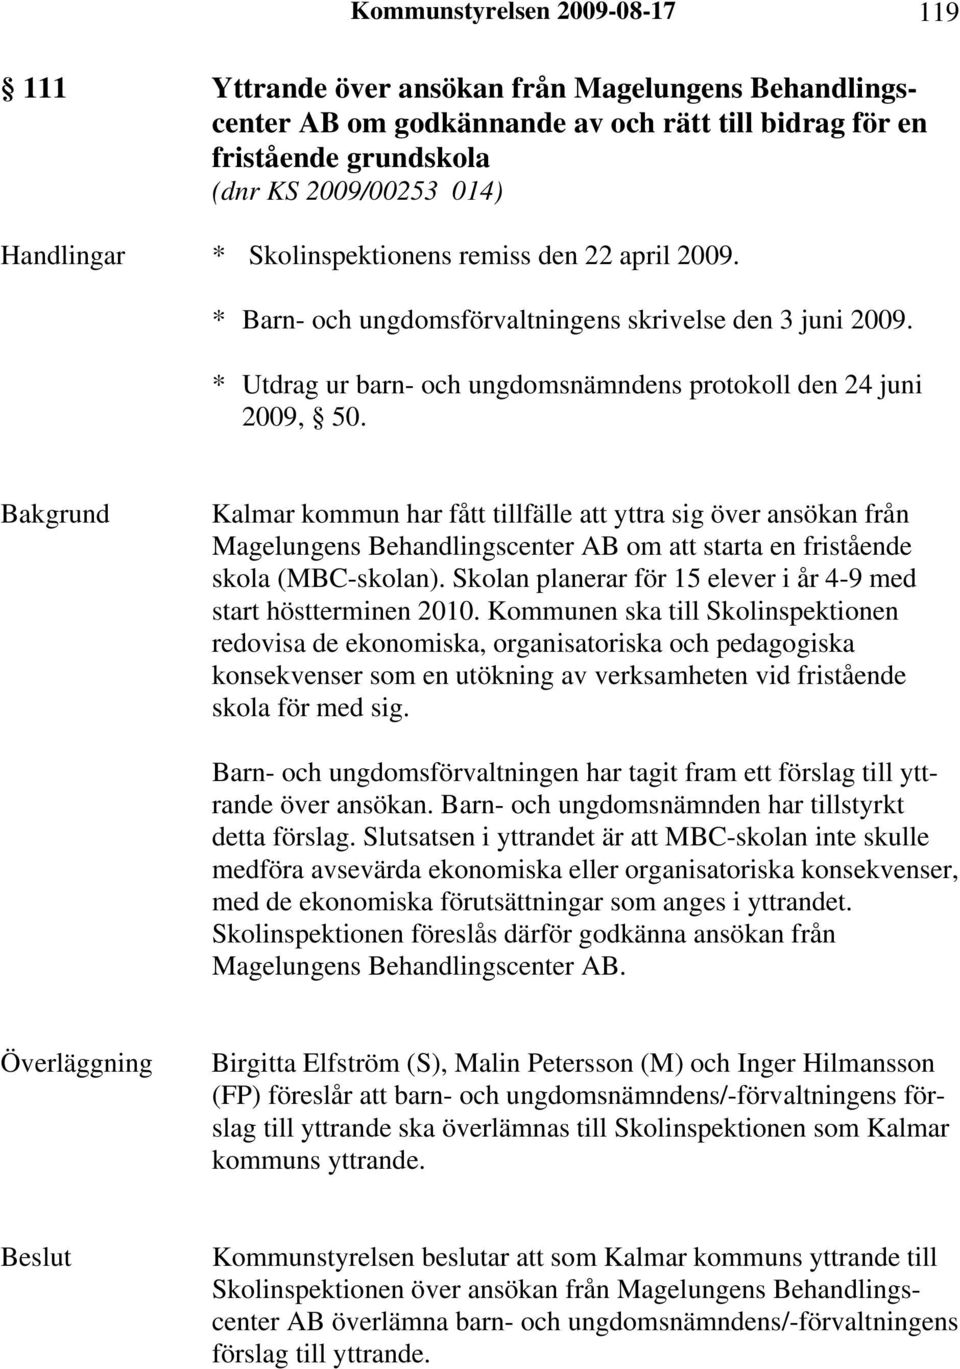 Kalmar kommun har fått tillfälle att yttra sig över ansökan från Magelungens Behandlingscenter AB om att starta en fristående skola (MBC-skolan).